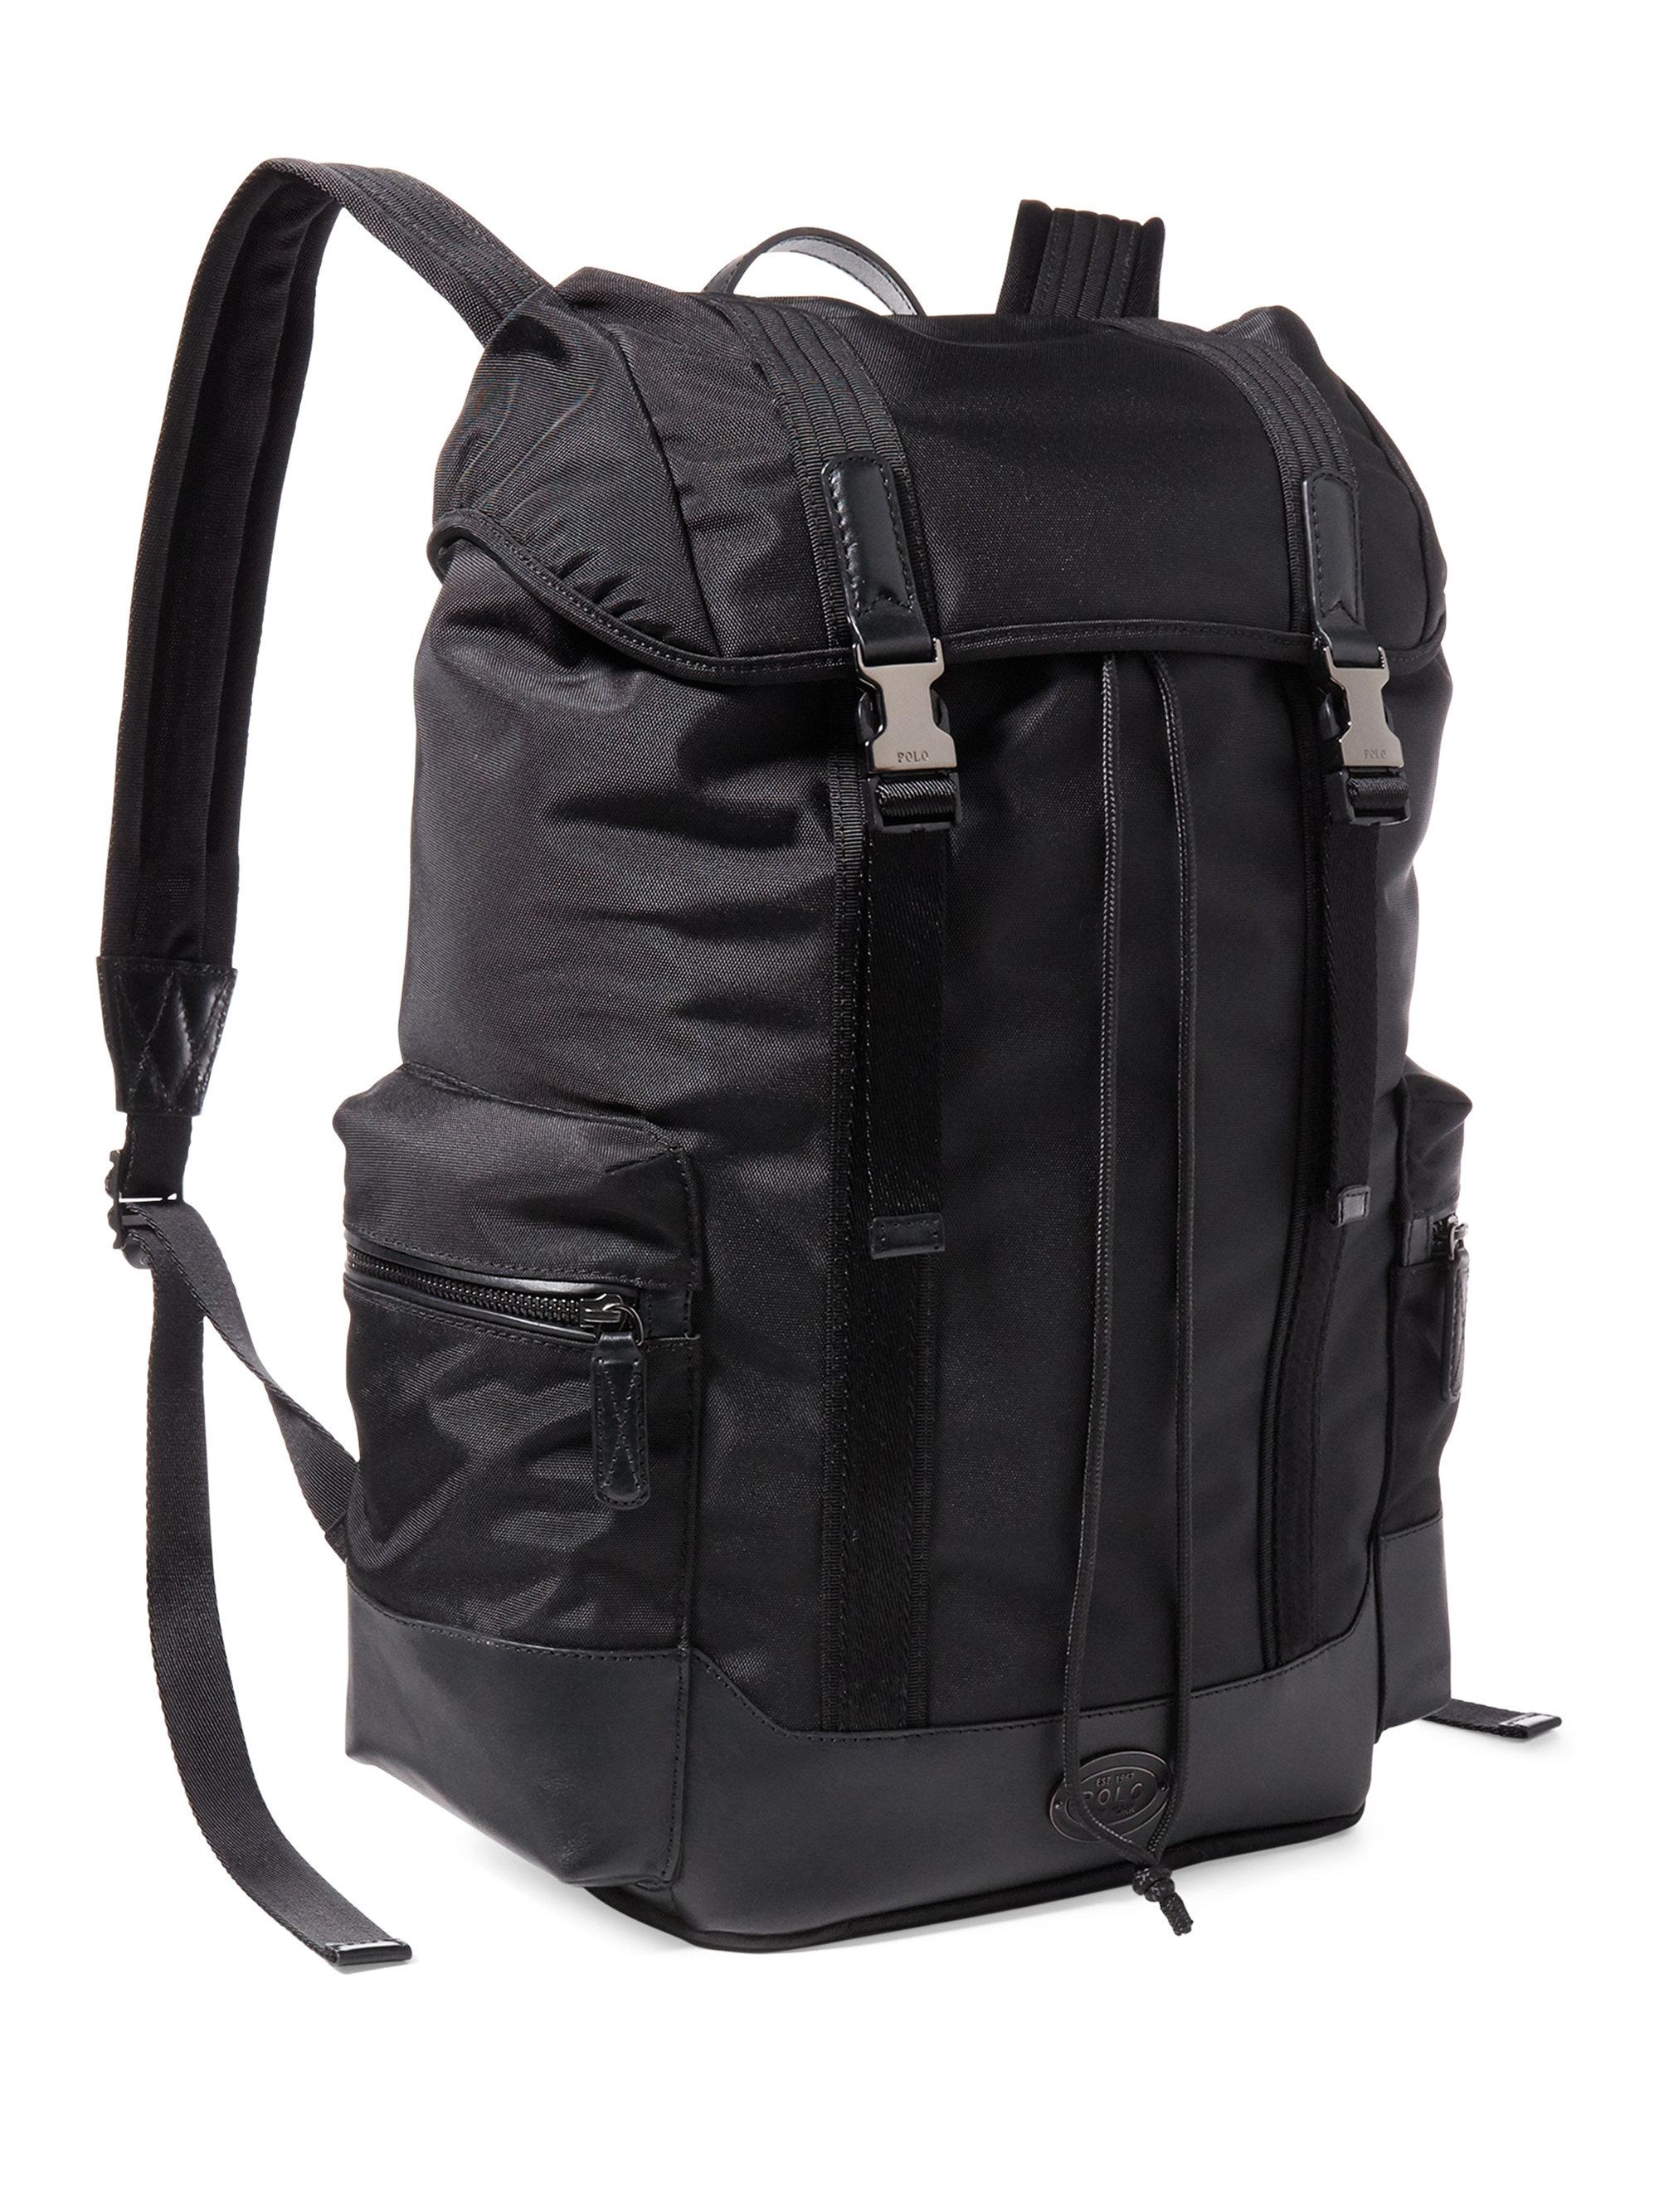 Polo ralph lauren Thompson Drawstring Backpack in Black for Men - Save ...